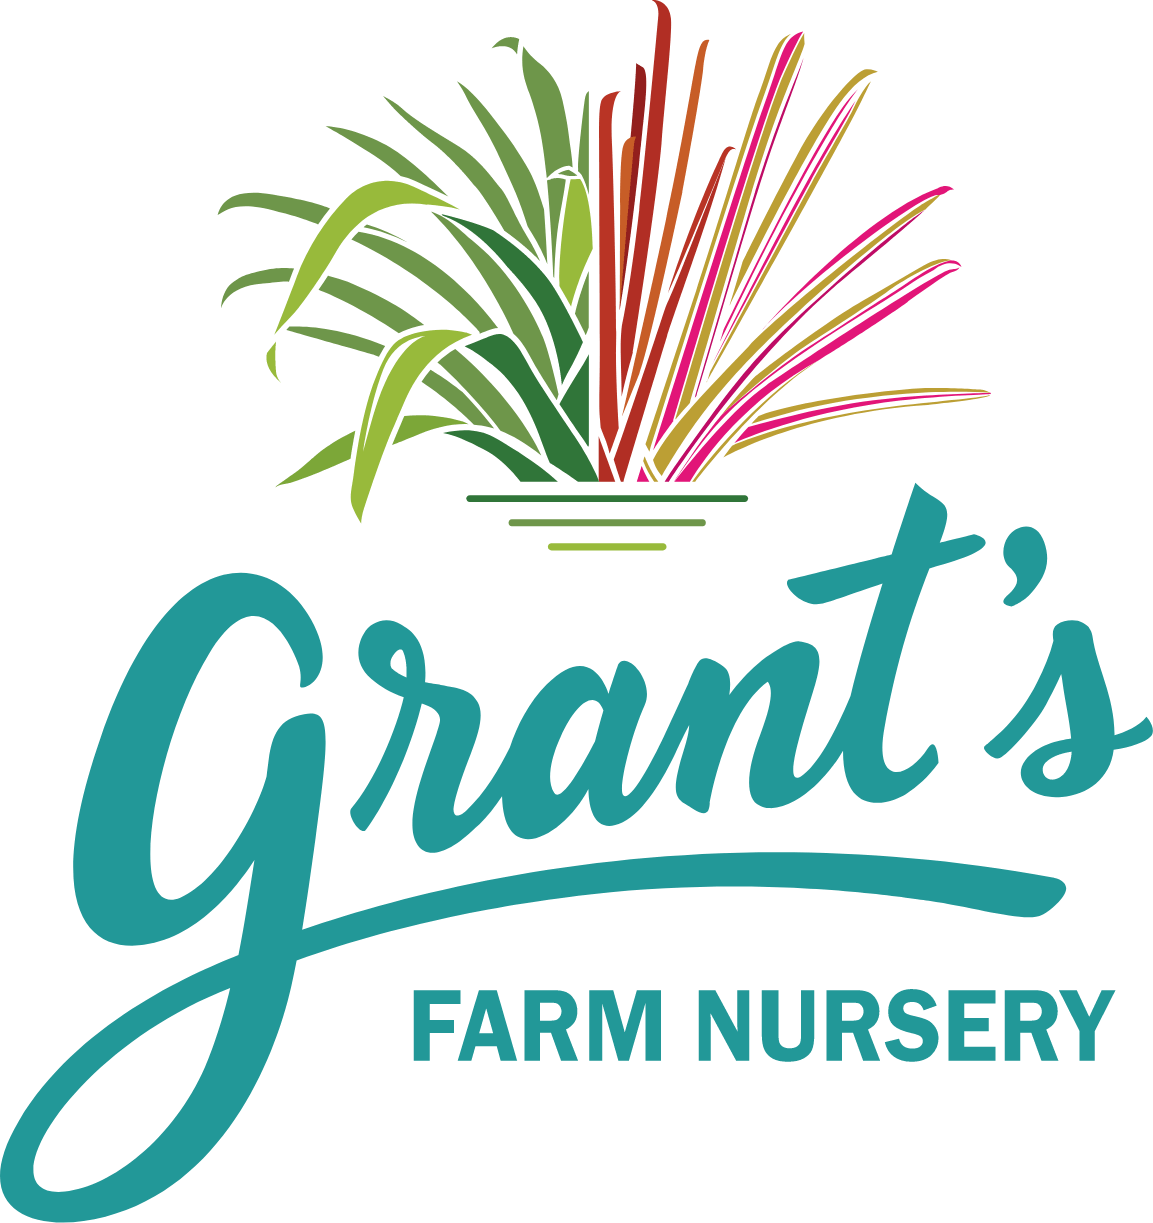 Wholesale Bromeliad Nursery Farm | Grants Farm Nursery